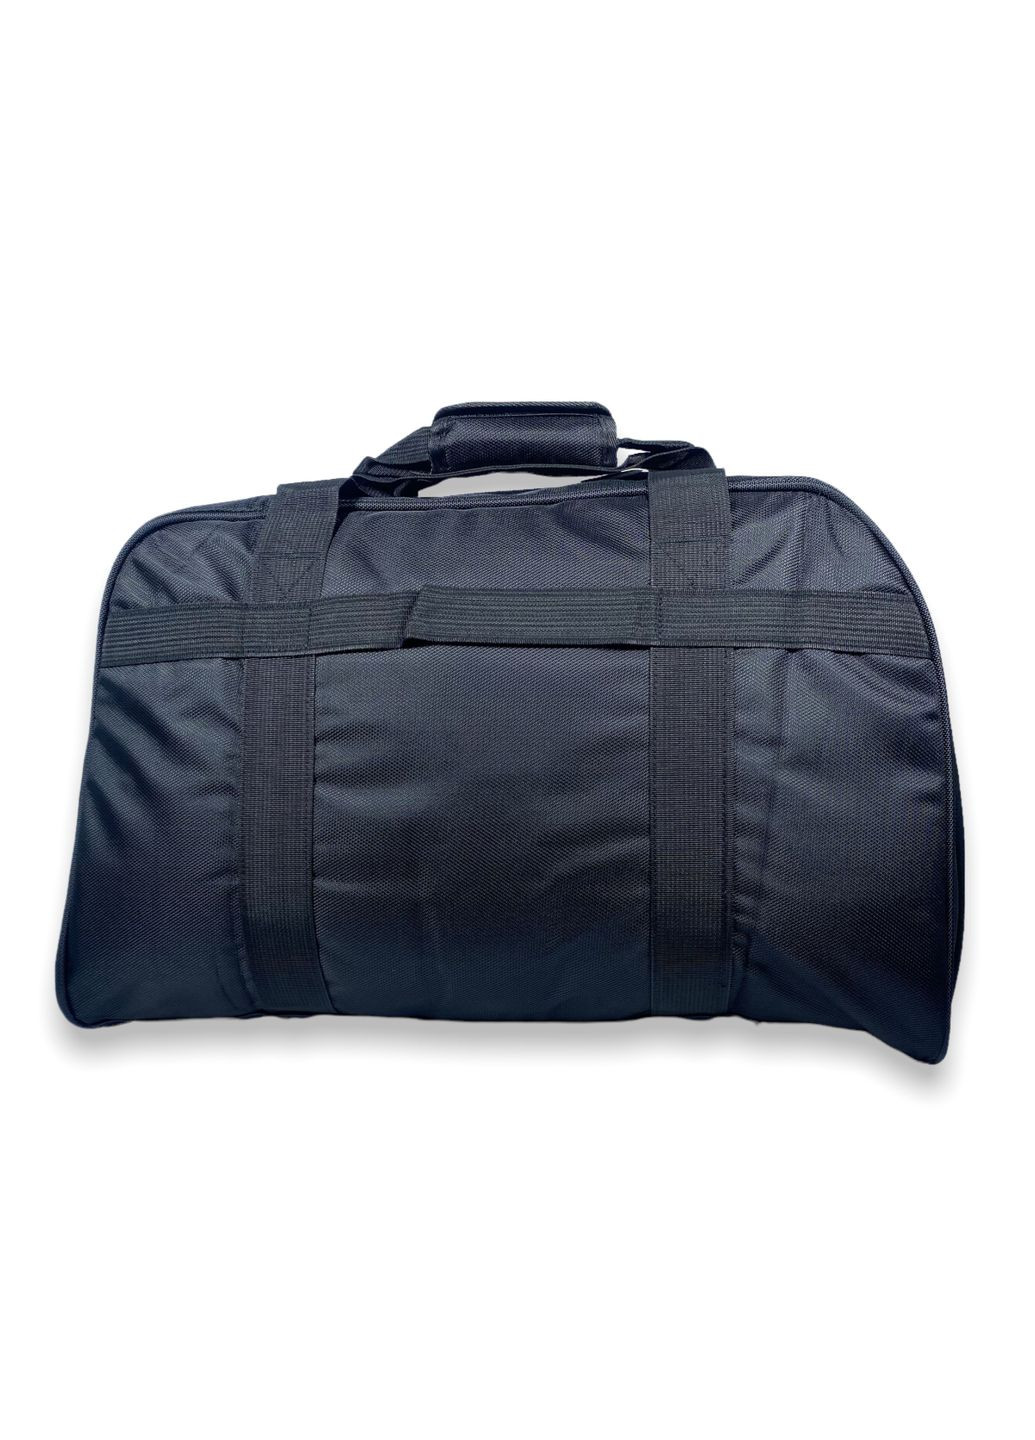 Дорожная сумка 60 л одно отделение внутренний карман два фронтальных кармана размер: 60*40*25 см черный Tongsheng (285814905)